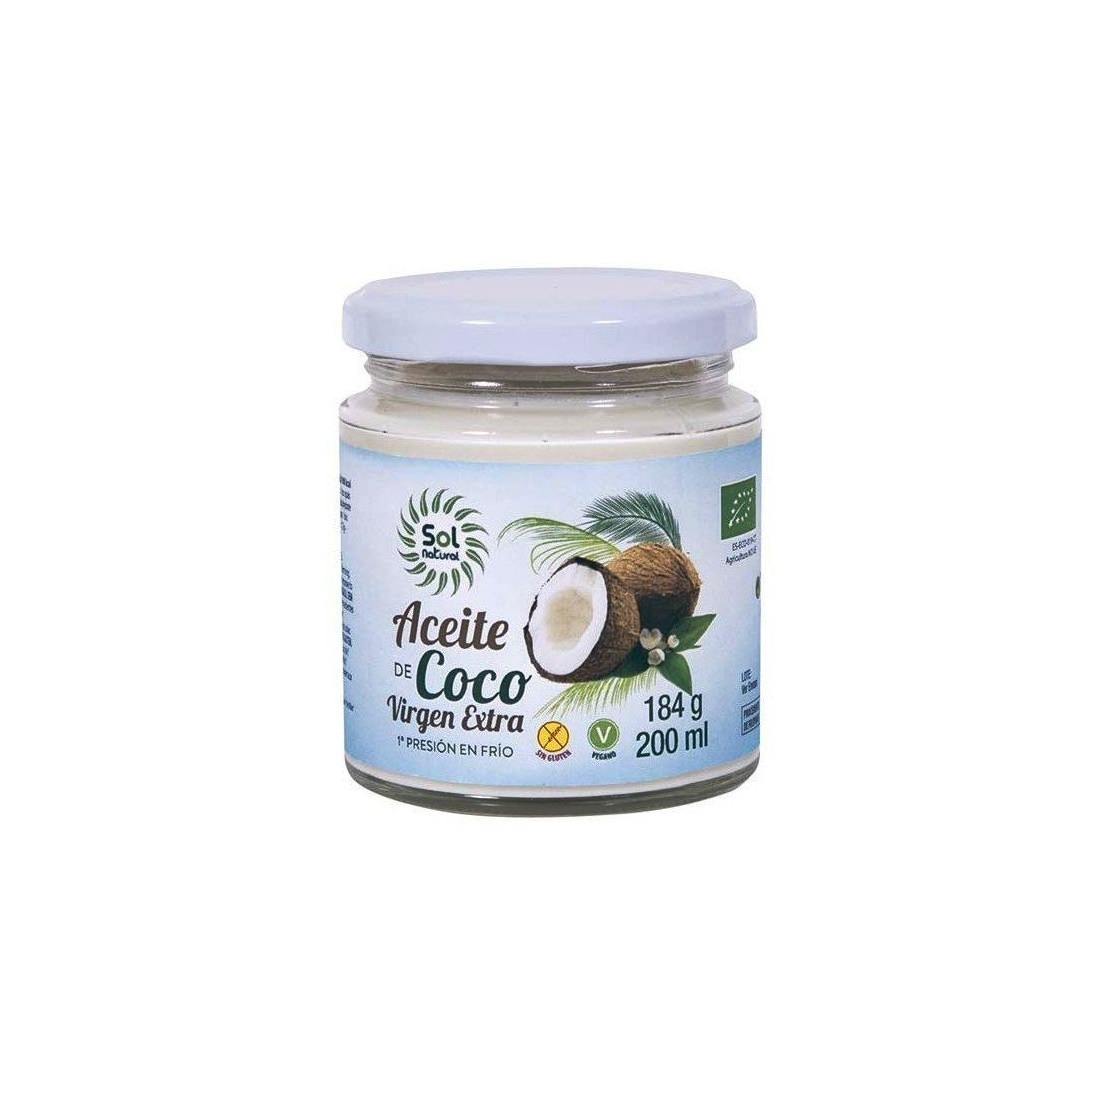 Aceite de Coco Bio, Sol Natural. Vismar Natural - Productos Ecológicos